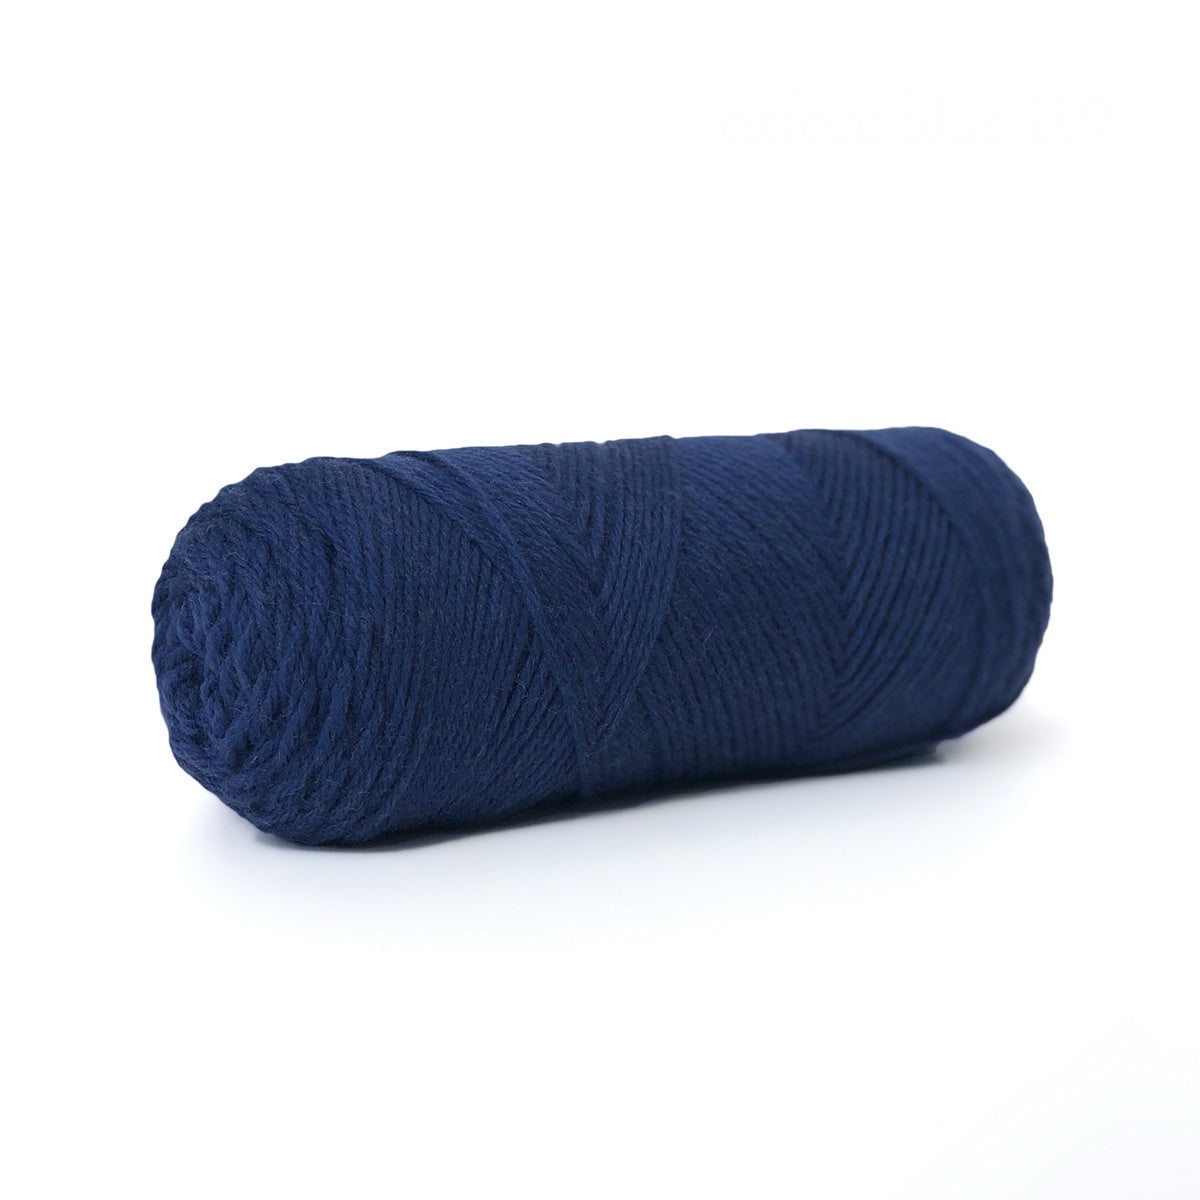 Sille Slipover Kit, Size 6-8 (Oxford Blue)